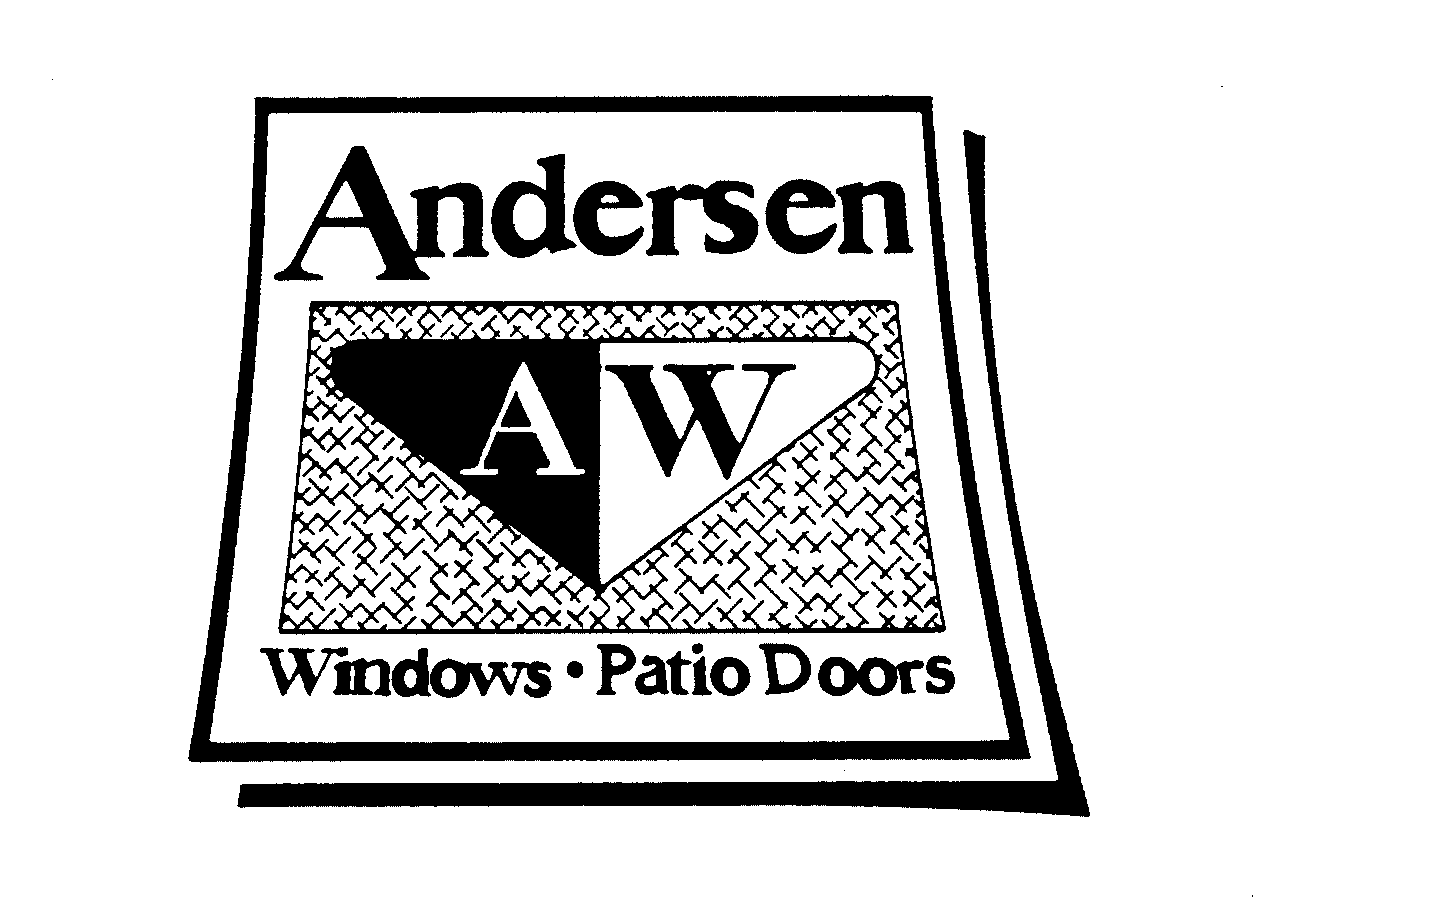  AW ANDERSEN WINDOWS - PATIO DOORS